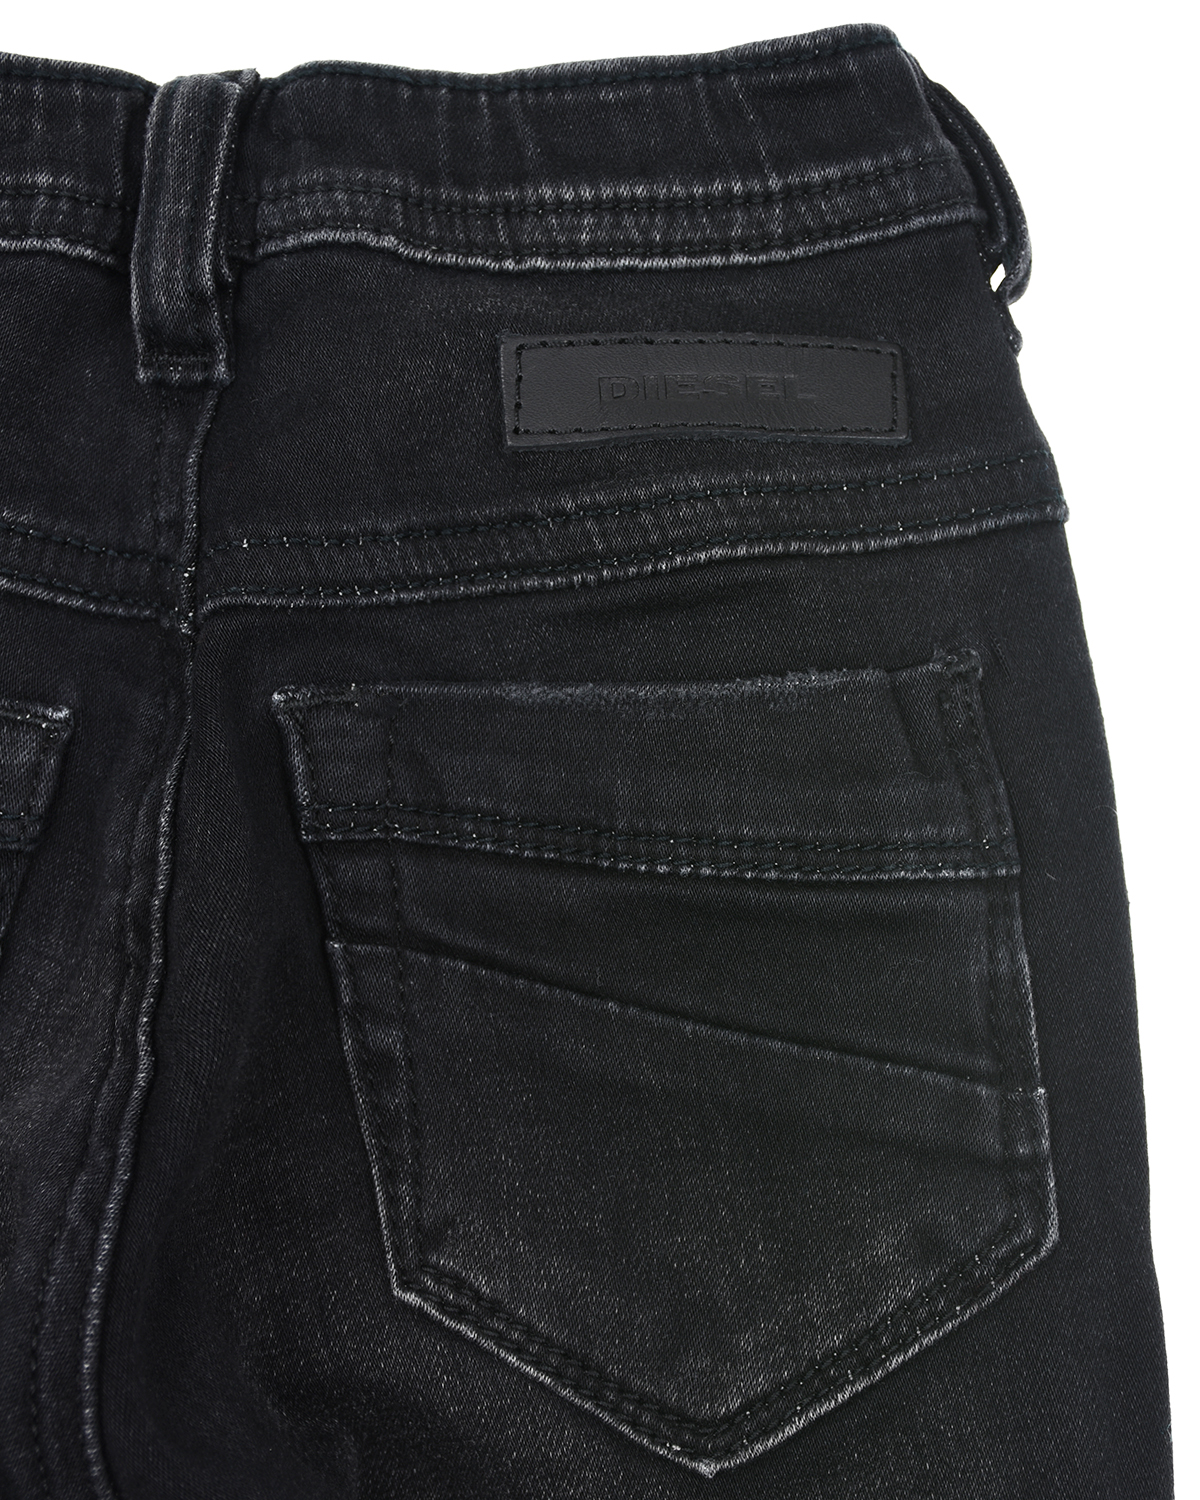 Потертые джинсы с поясом на резинке Diesel детские, размер 86, цвет серый - фото 4